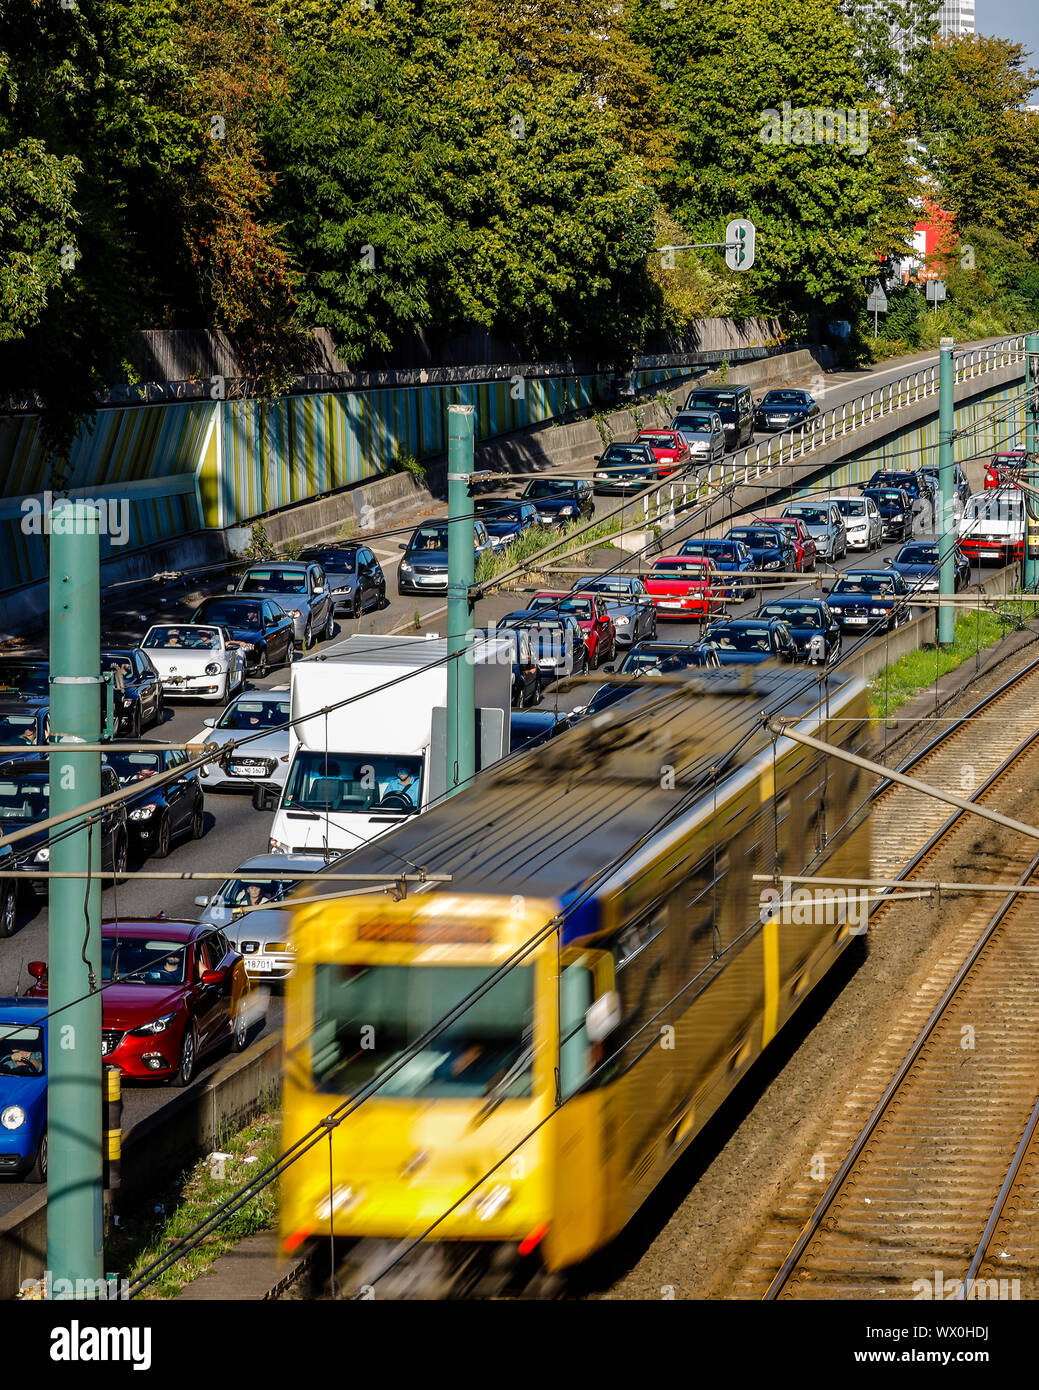 Essen, la zona della Ruhr, Renania settentrionale-Vestfalia, Germania - Incidente la congestione sull'autostrada A40, il trasporto pubblico, qui una metropolitana U18 ha la corsa libera. Ess Foto Stock